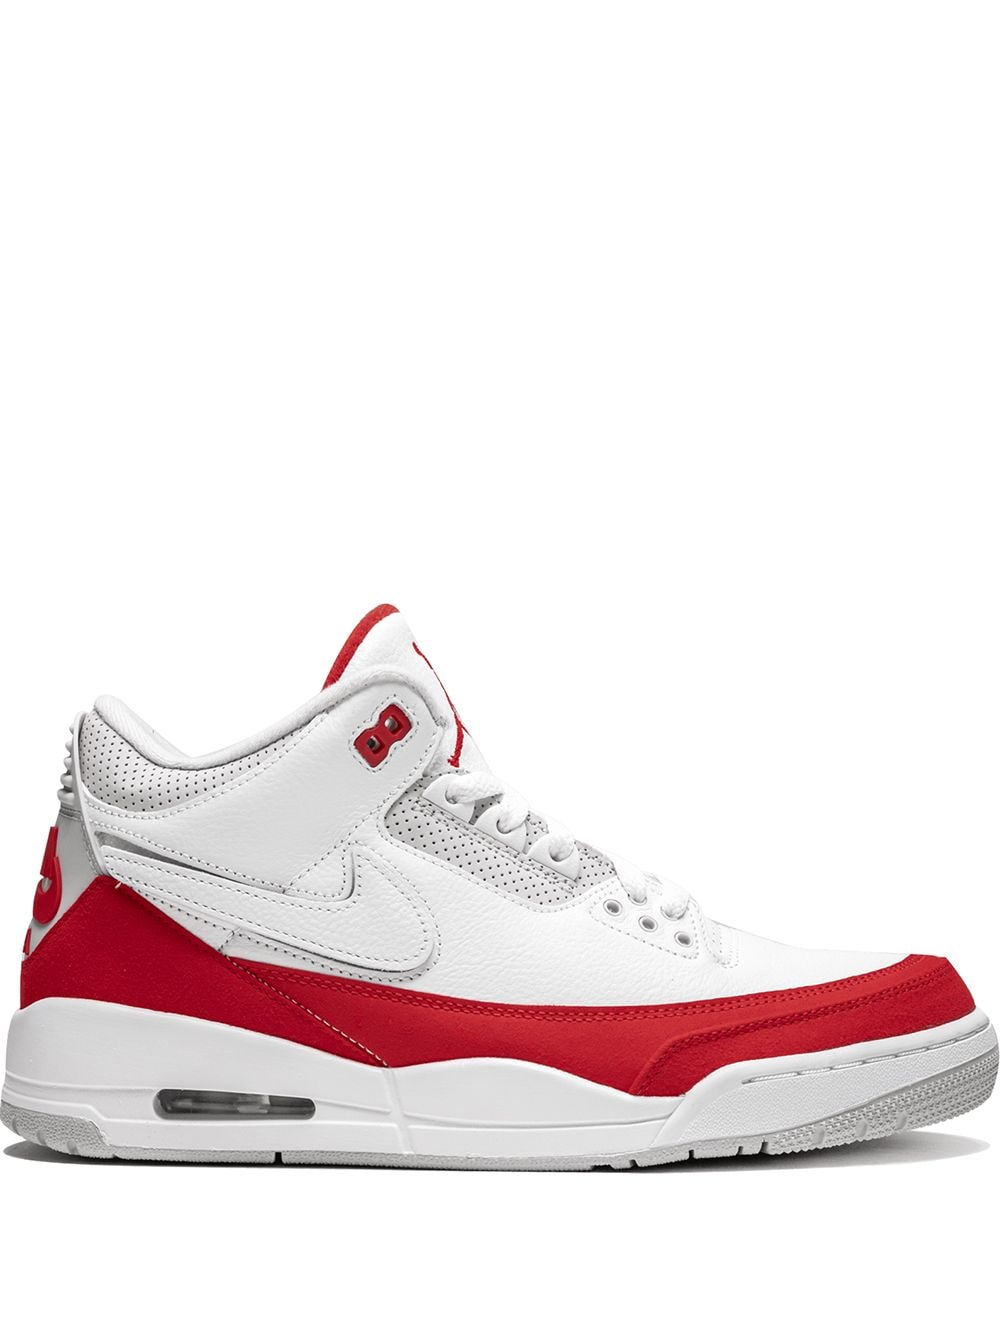 Jordan Air Jordan 3 Retro Tinker "Air Max 1 - University Red" sneakers - White